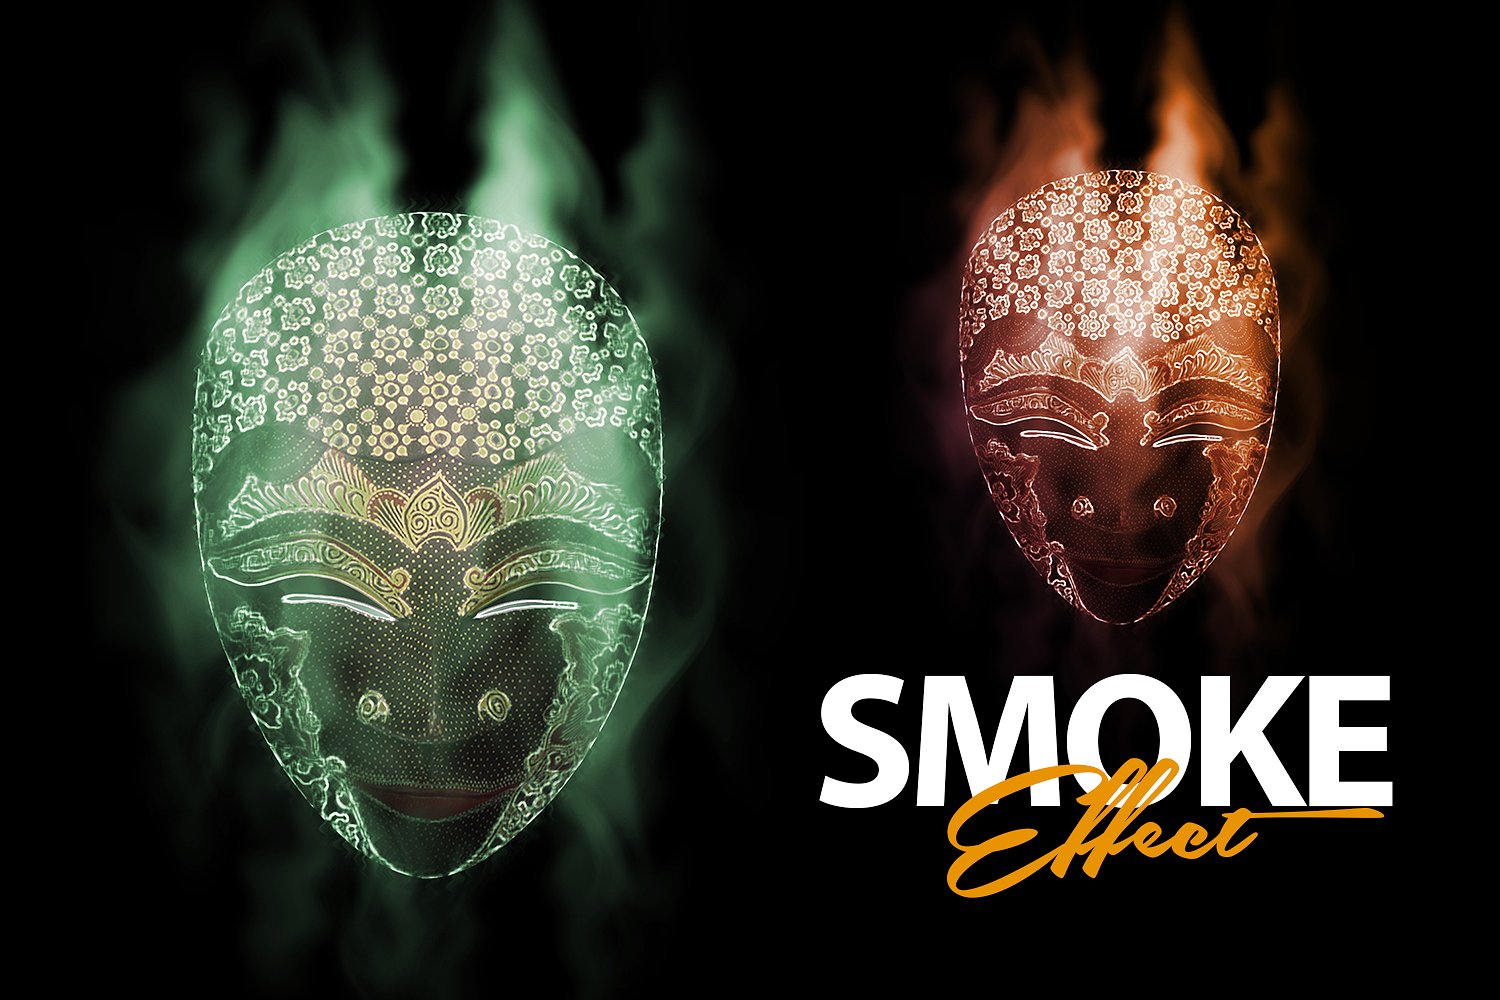 神秘的烟雾效应PS动作下载 Smoke Effect Photoshop Action [atn]插图(2)